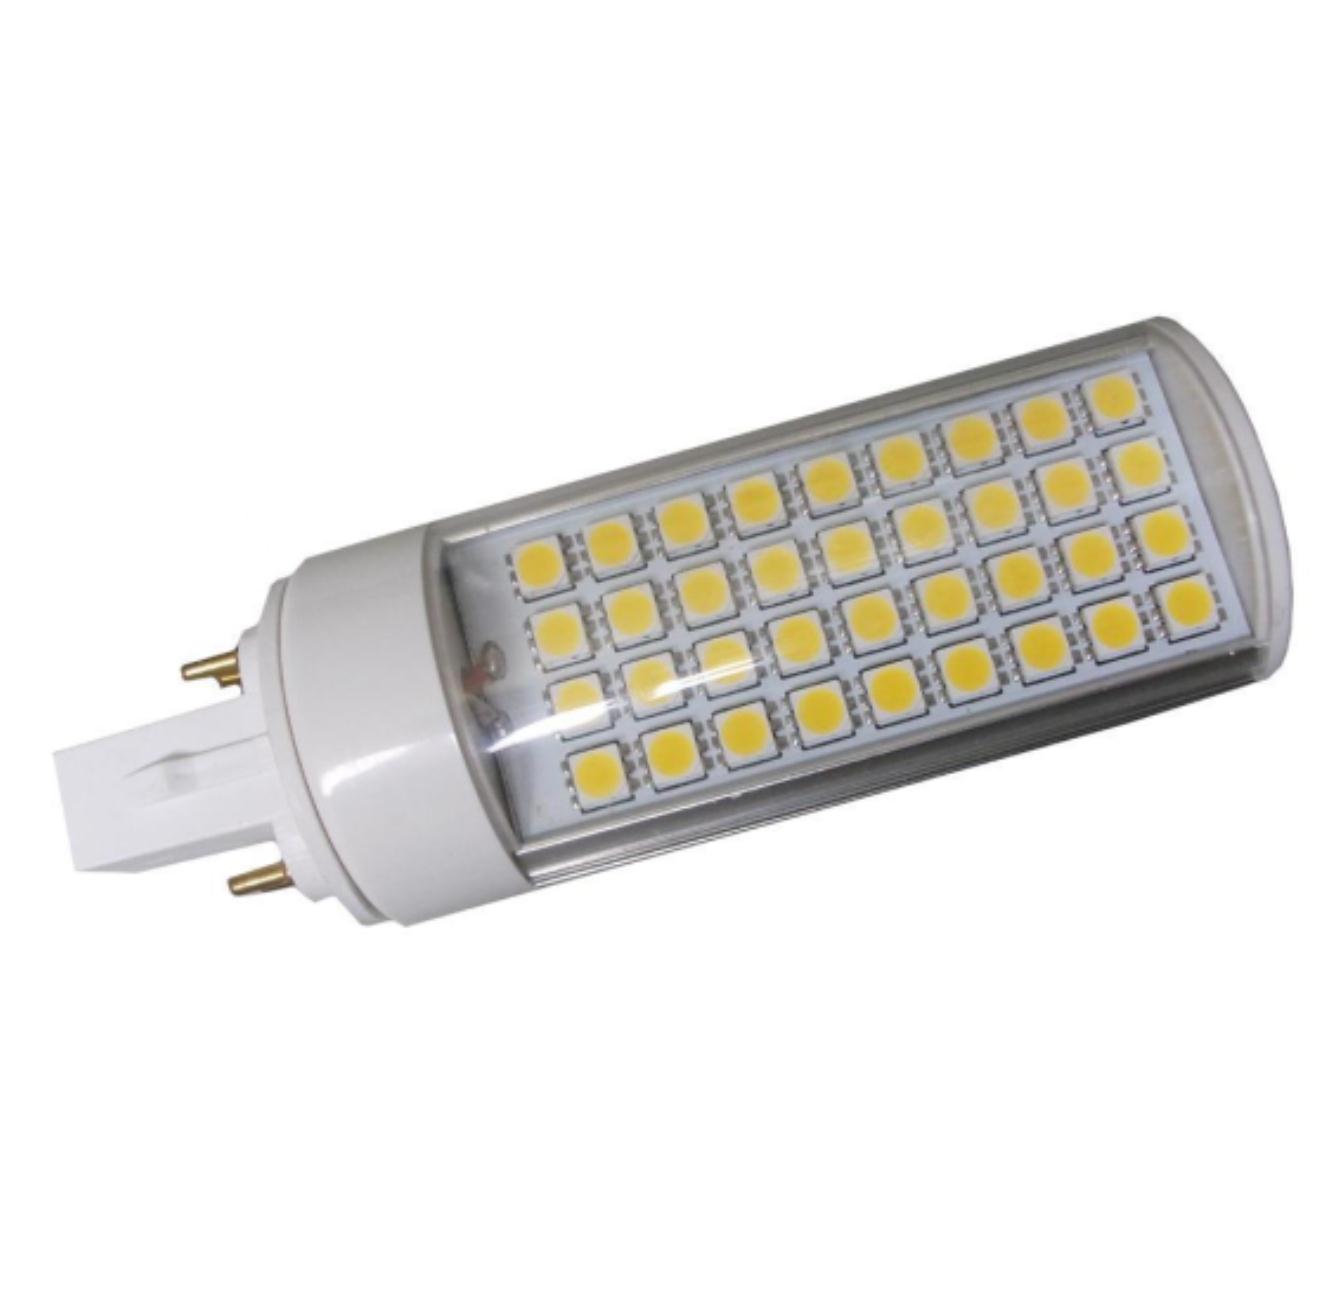 SMD 5050 LED G24 Lights